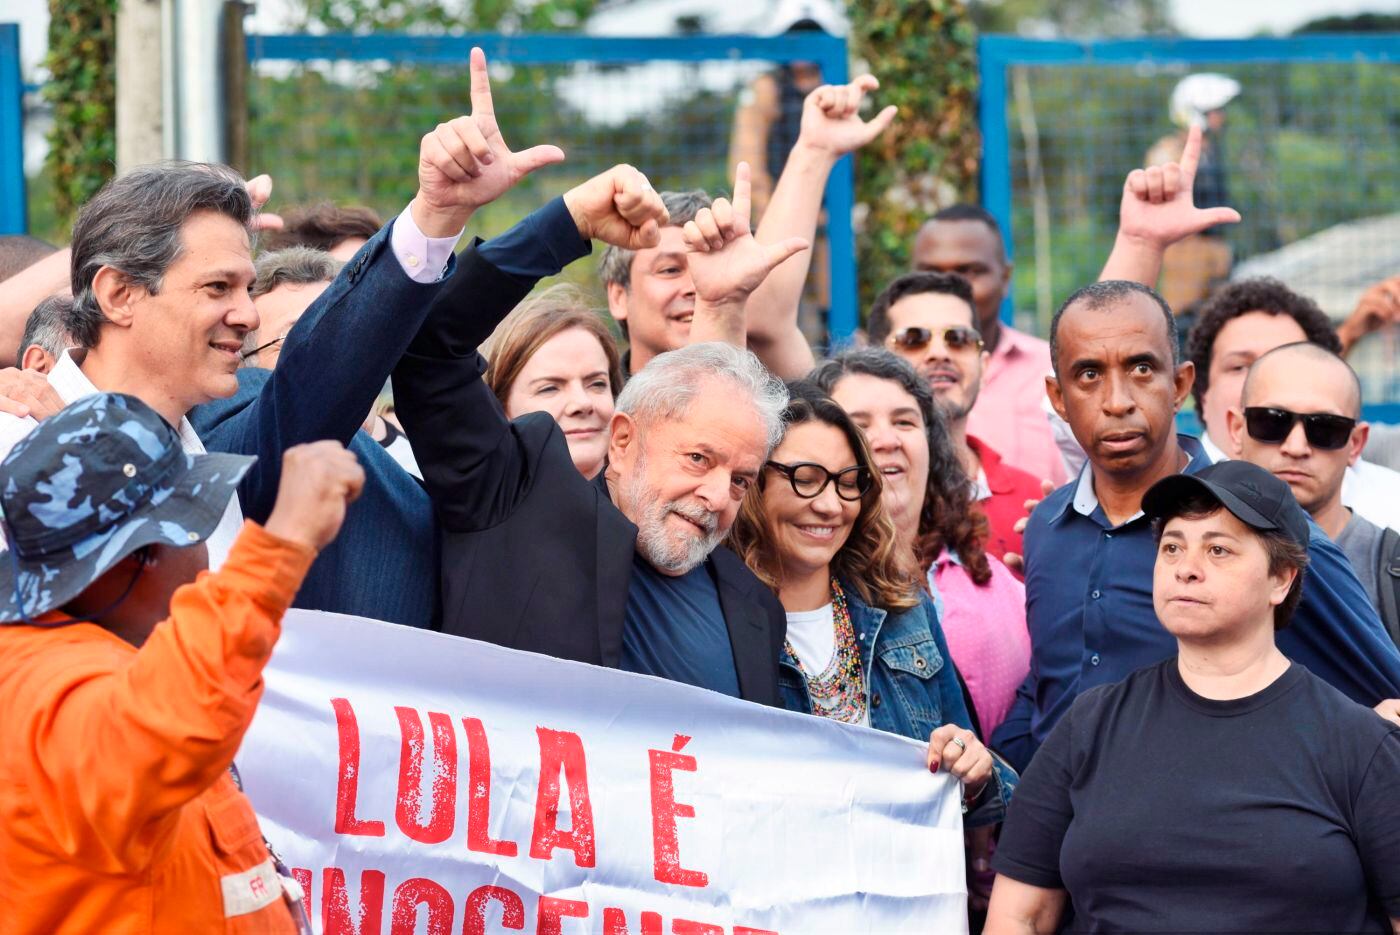 Una de las imágenes de Luiz Inácio Lula da Silva afuera de prisión.